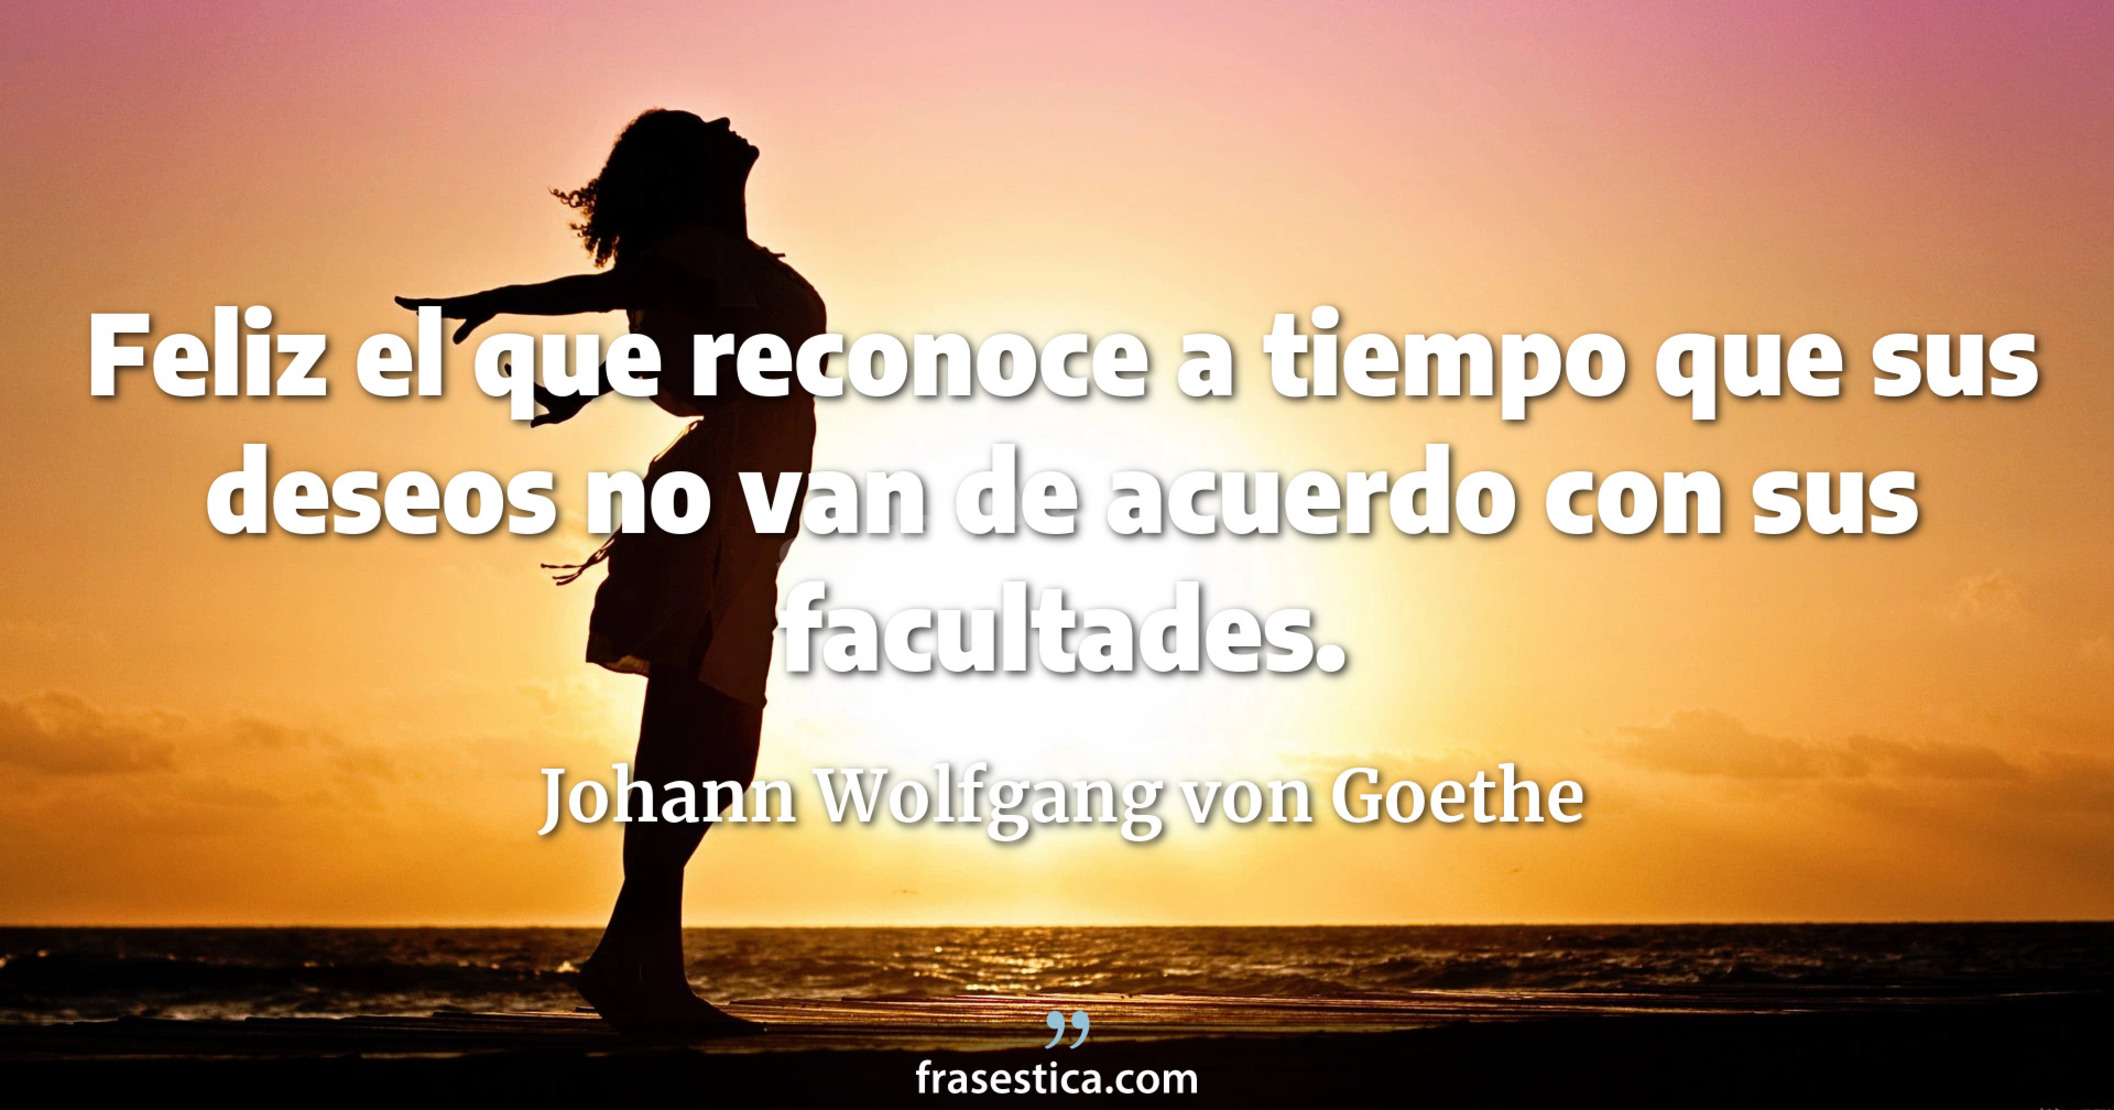 Feliz el que reconoce a tiempo que sus deseos no van de acuerdo con sus facultades. - Johann Wolfgang von Goethe